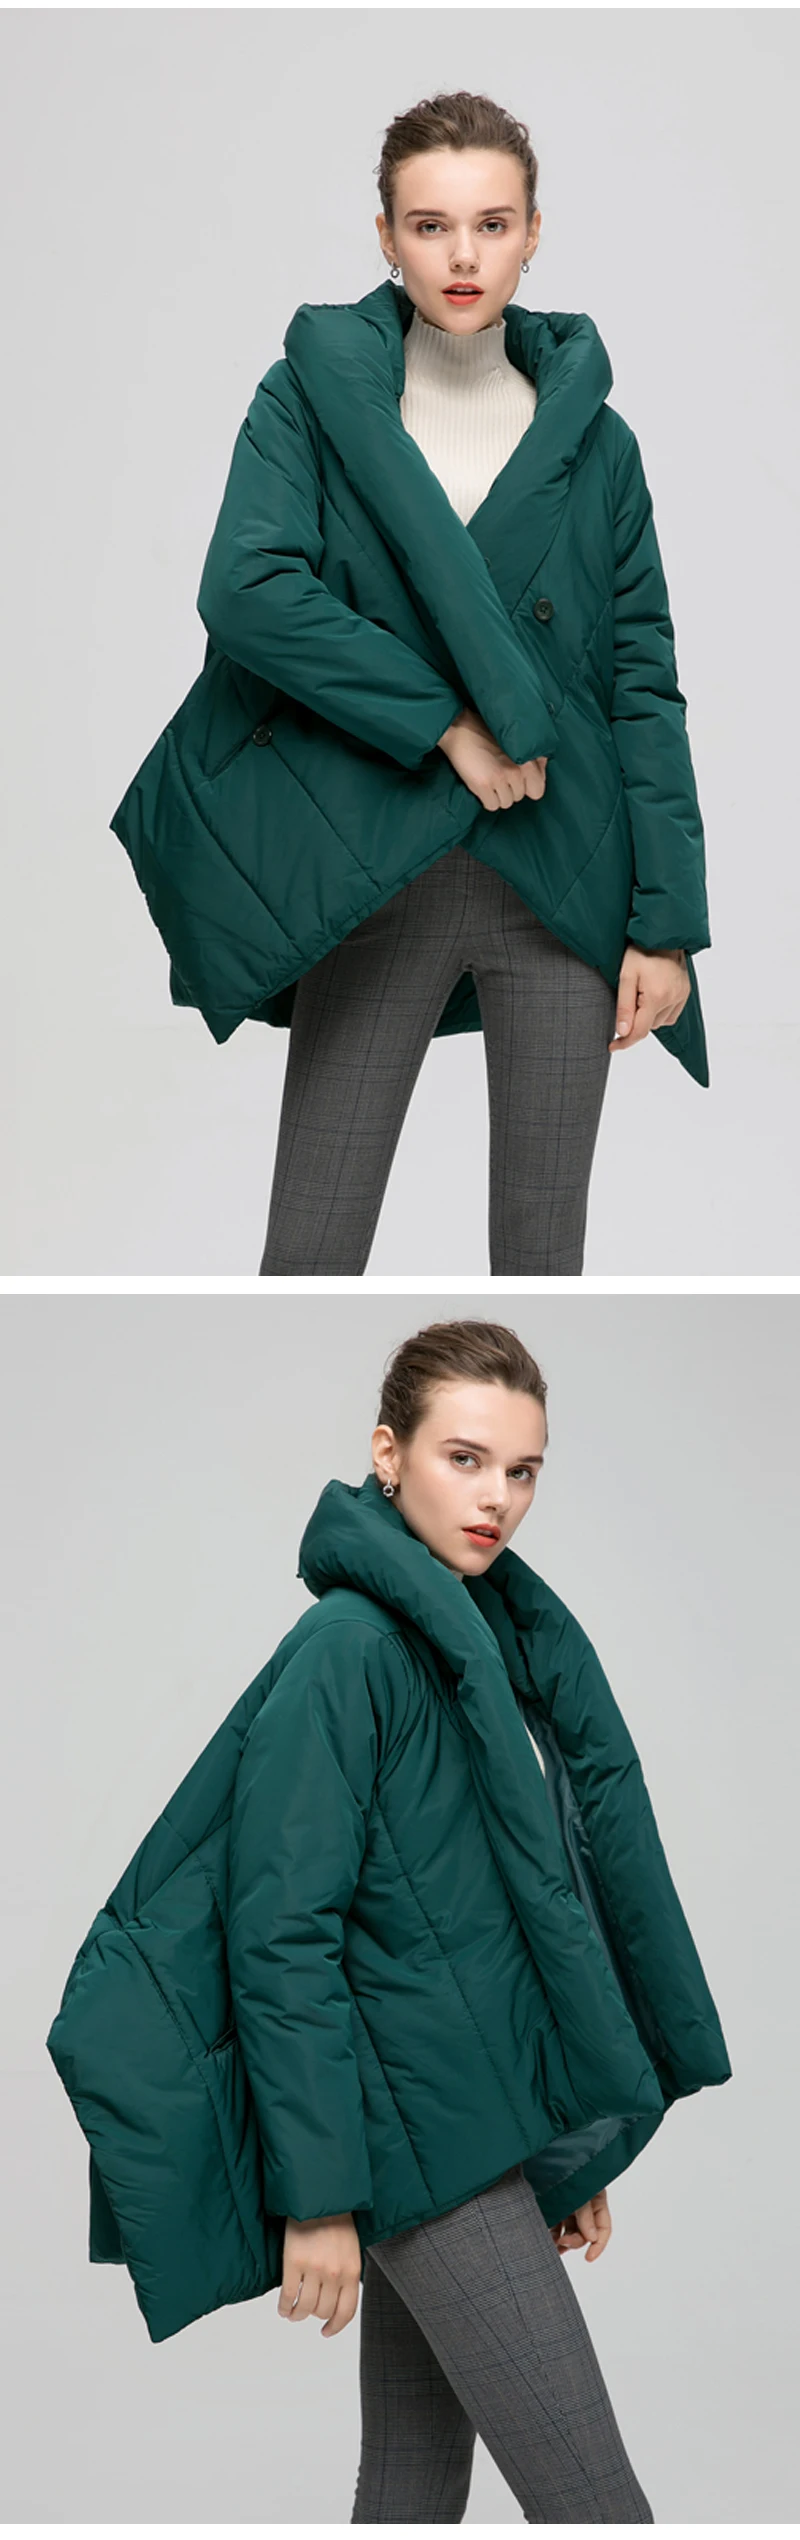 Bagomoto пальто для женщин зима Модный Плащ Куртка зимняя женская парка свободного размера плюс пуховик Зимнее пальто теплая куртка пальто